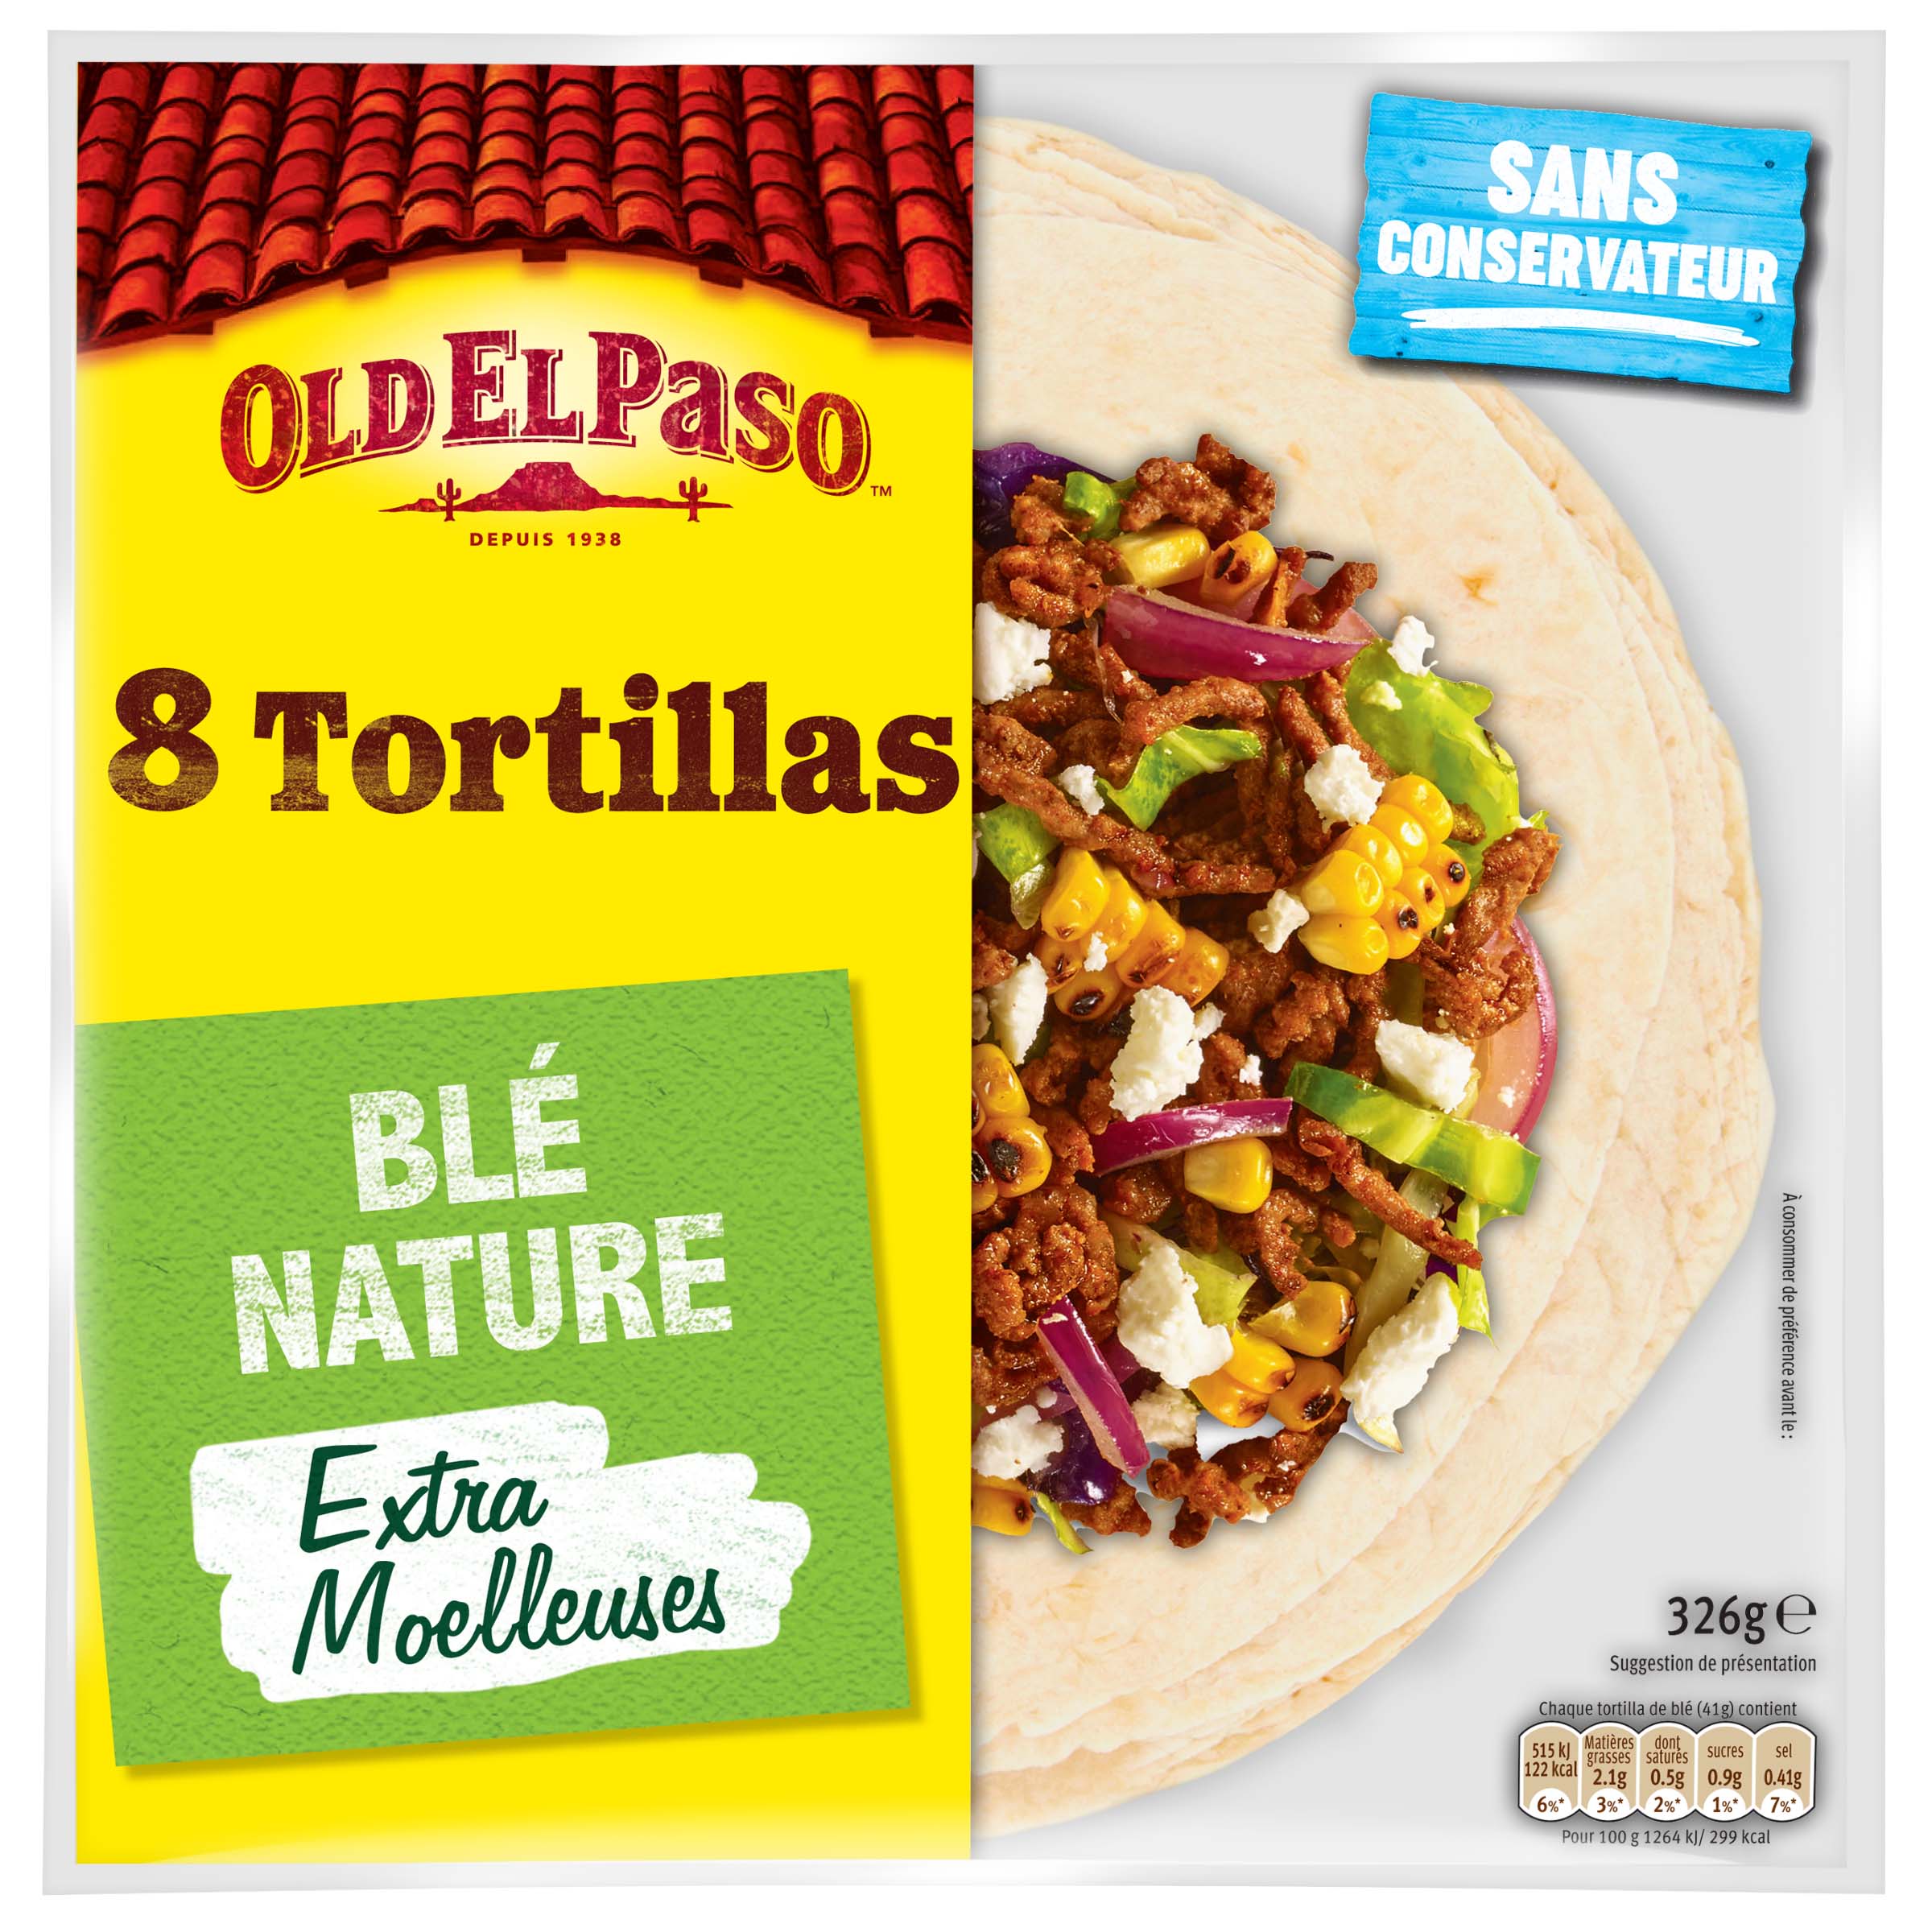 OLD EL PASO Tortillas de blé nature extra moelleuses sans conservateur 8  tortillas 326g pas cher 